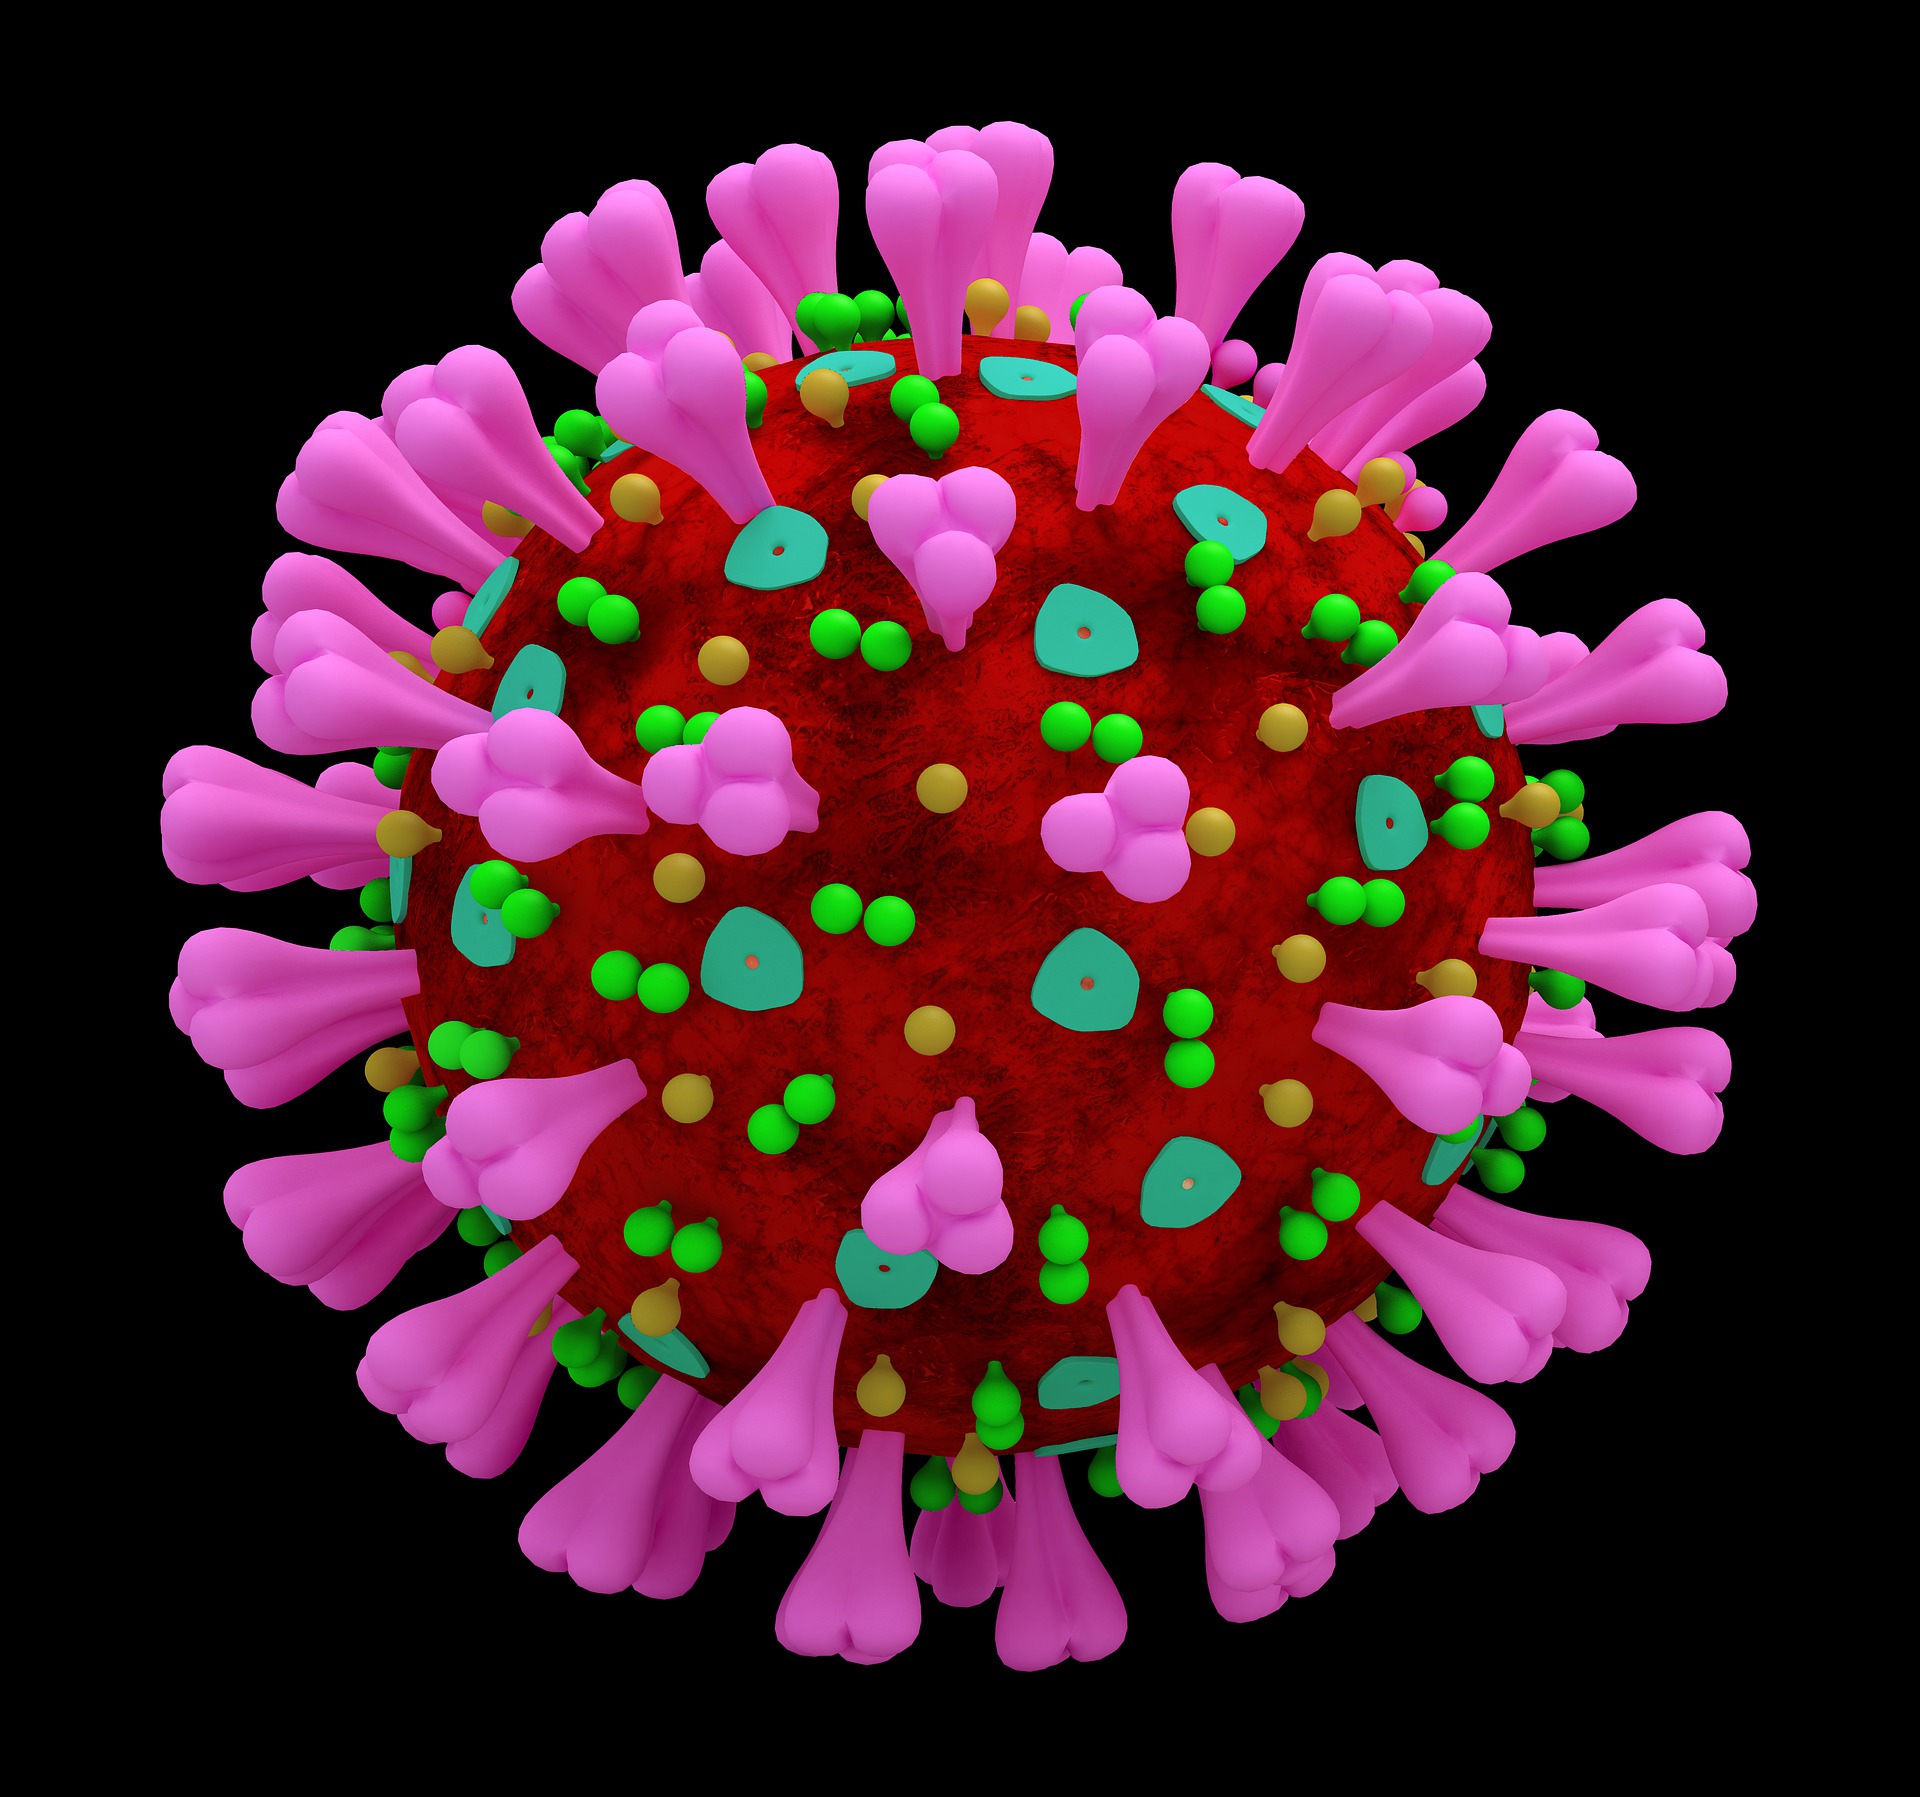 Svjetska zdravstvena organizacija (WHO) proglasila kraj pandemije koronavirusa